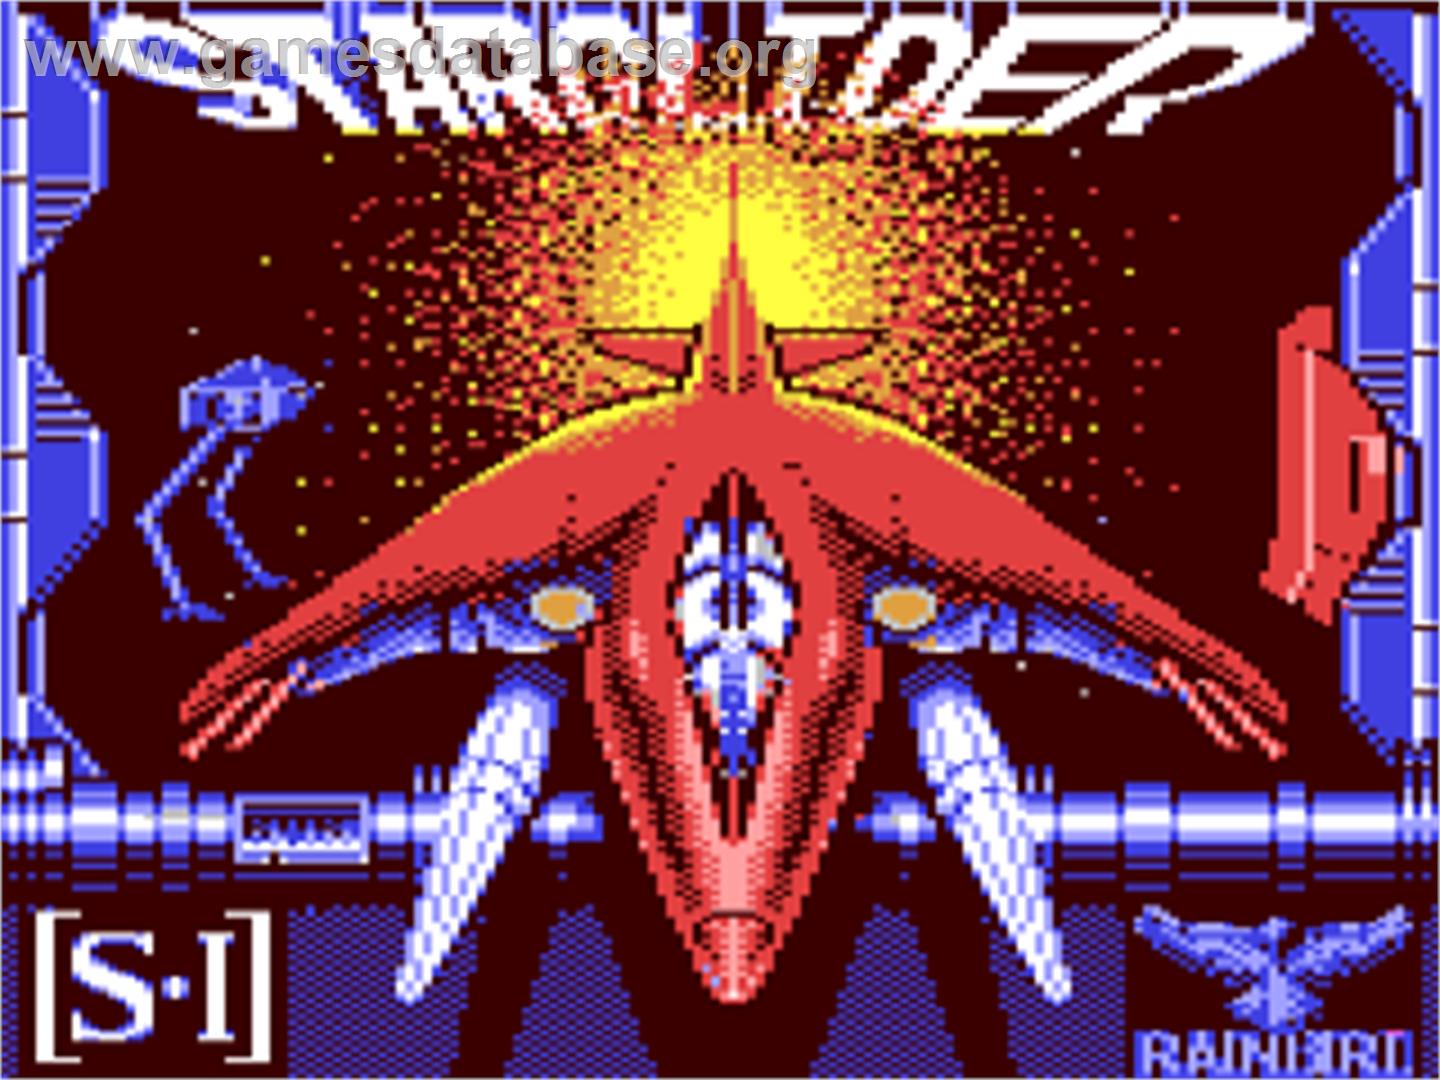 Starglider - Commodore 64 - Artwork - Title Screen